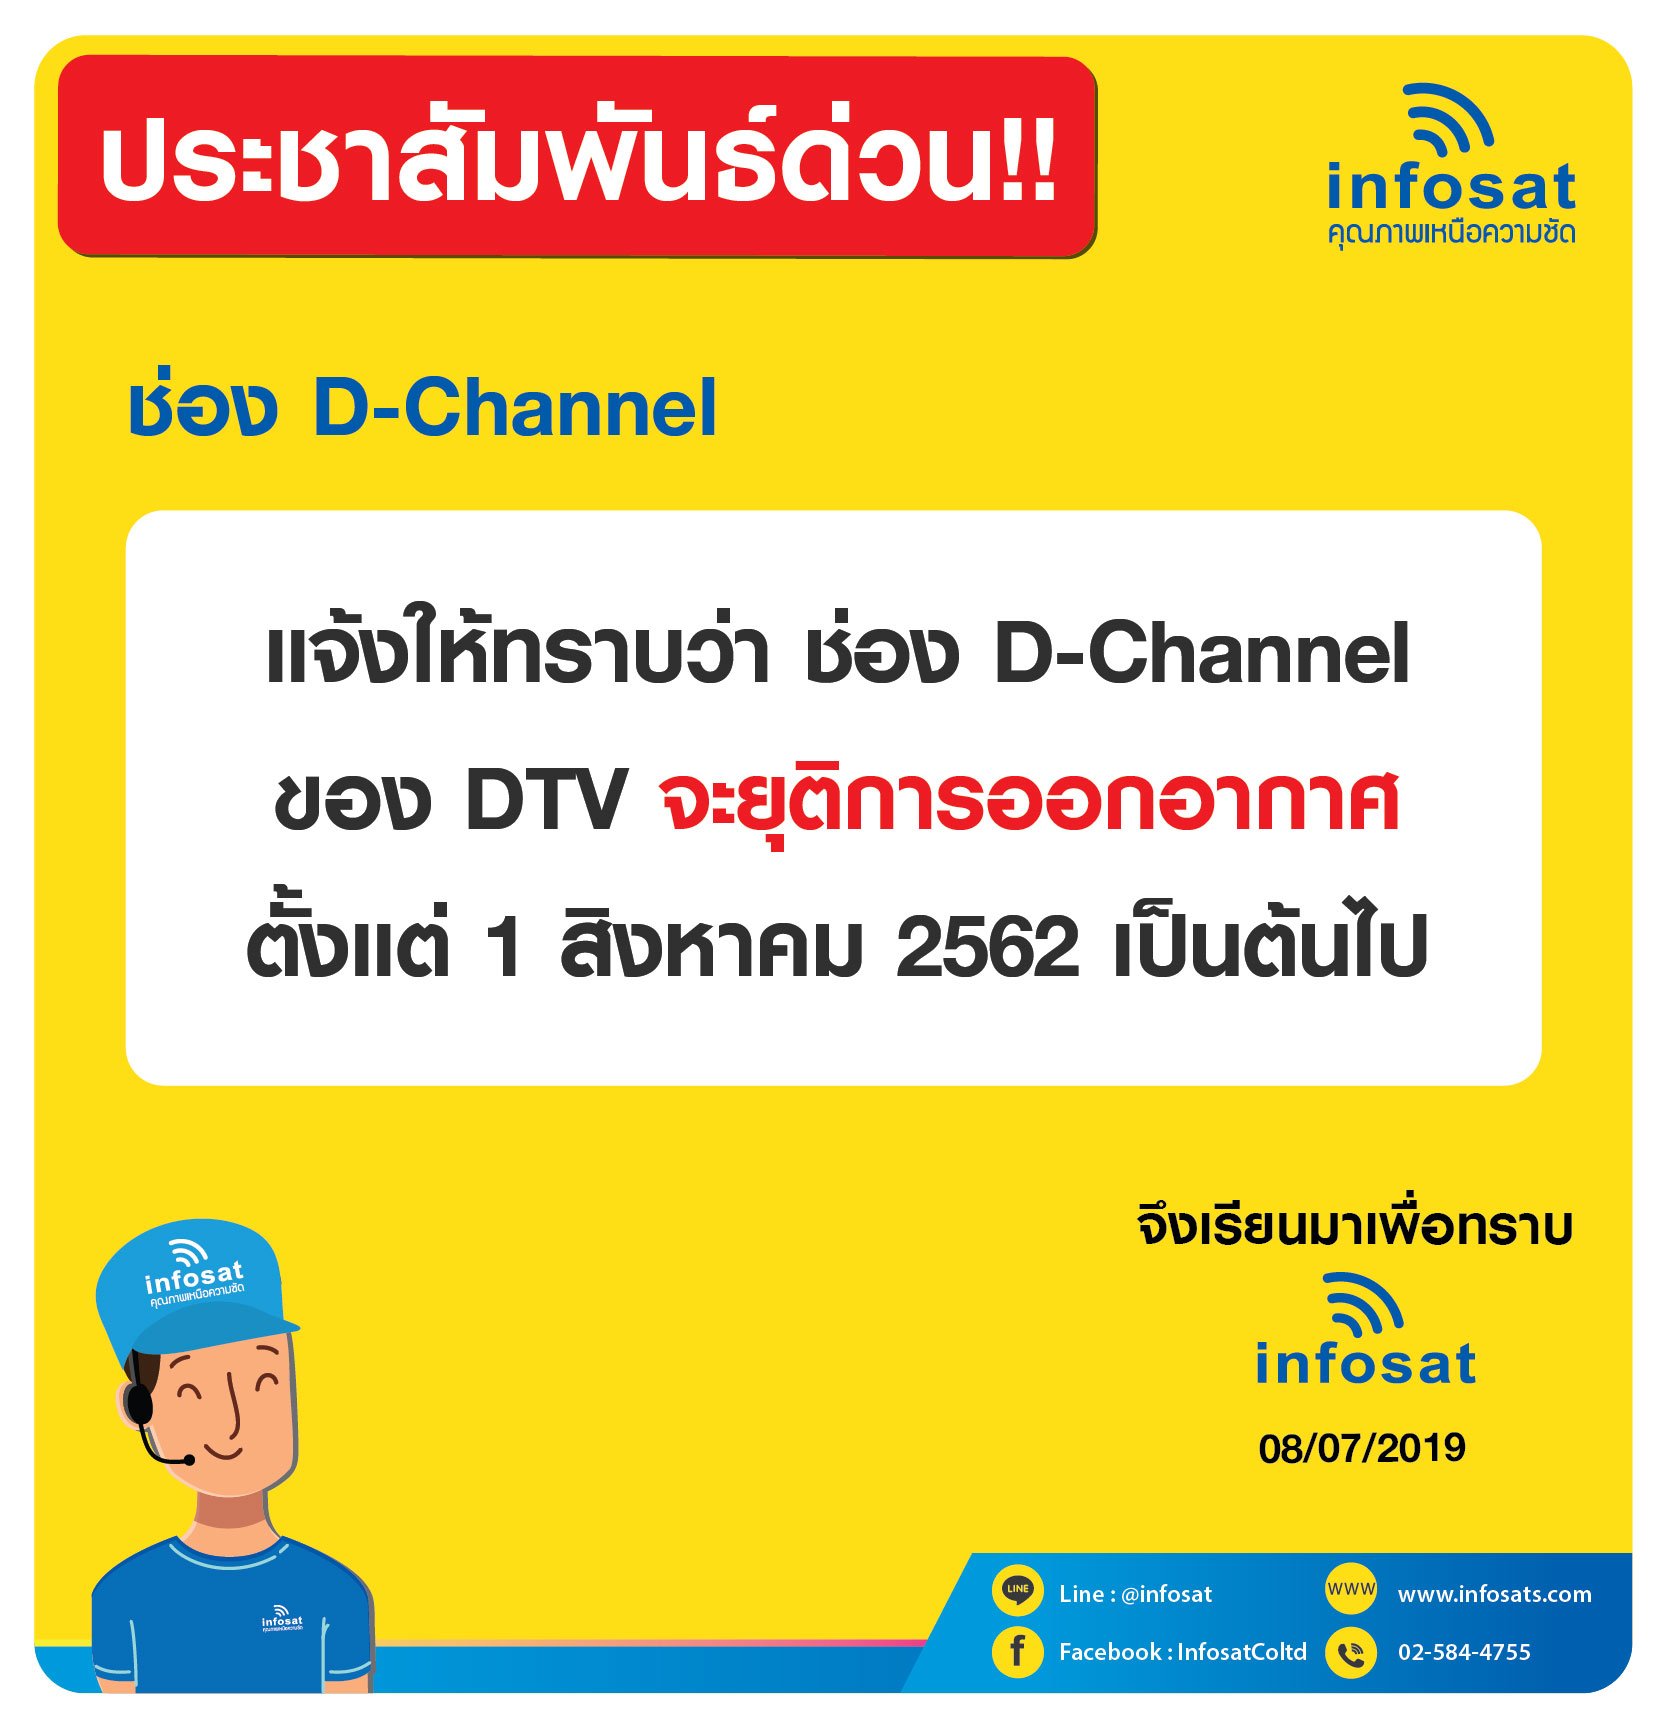 ช่อง D-Channel  ของ DTV จะยุติการออกอากาศ ตั้งแต่ 1 สิงหาคม 2562 เป็นต้นไป